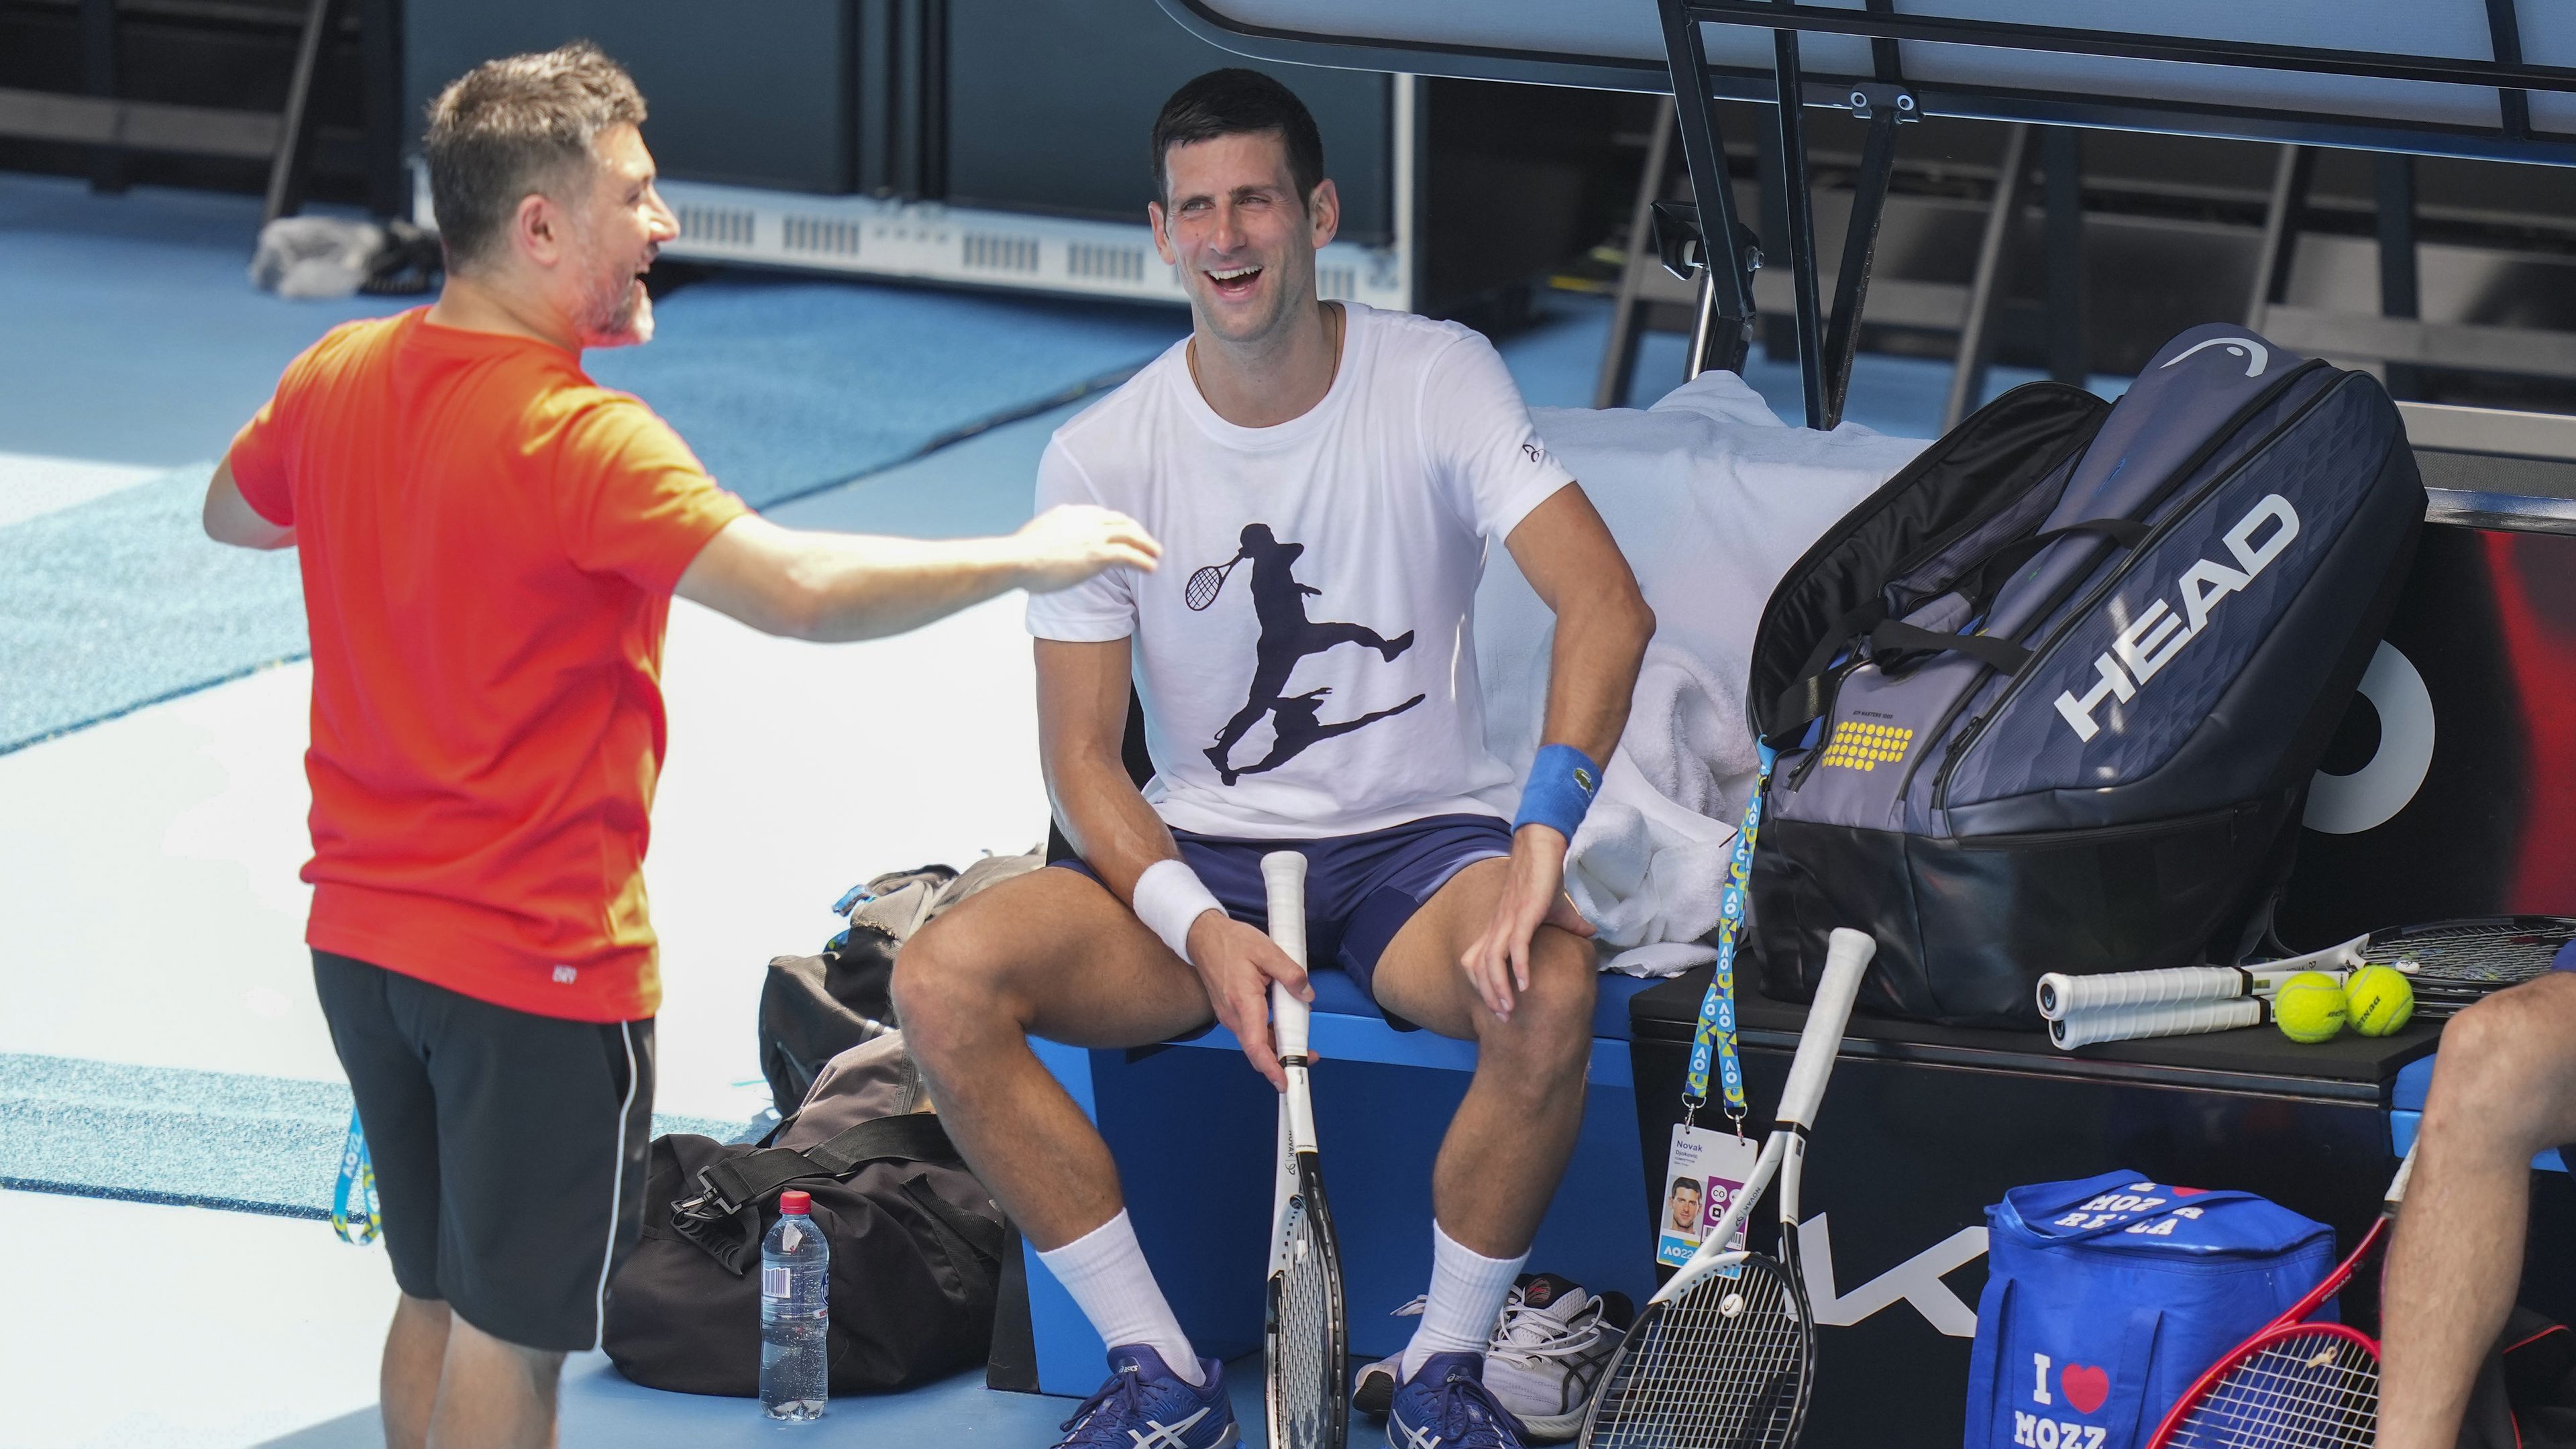 'Uncomfortable' rivals give Novak cold shoulder